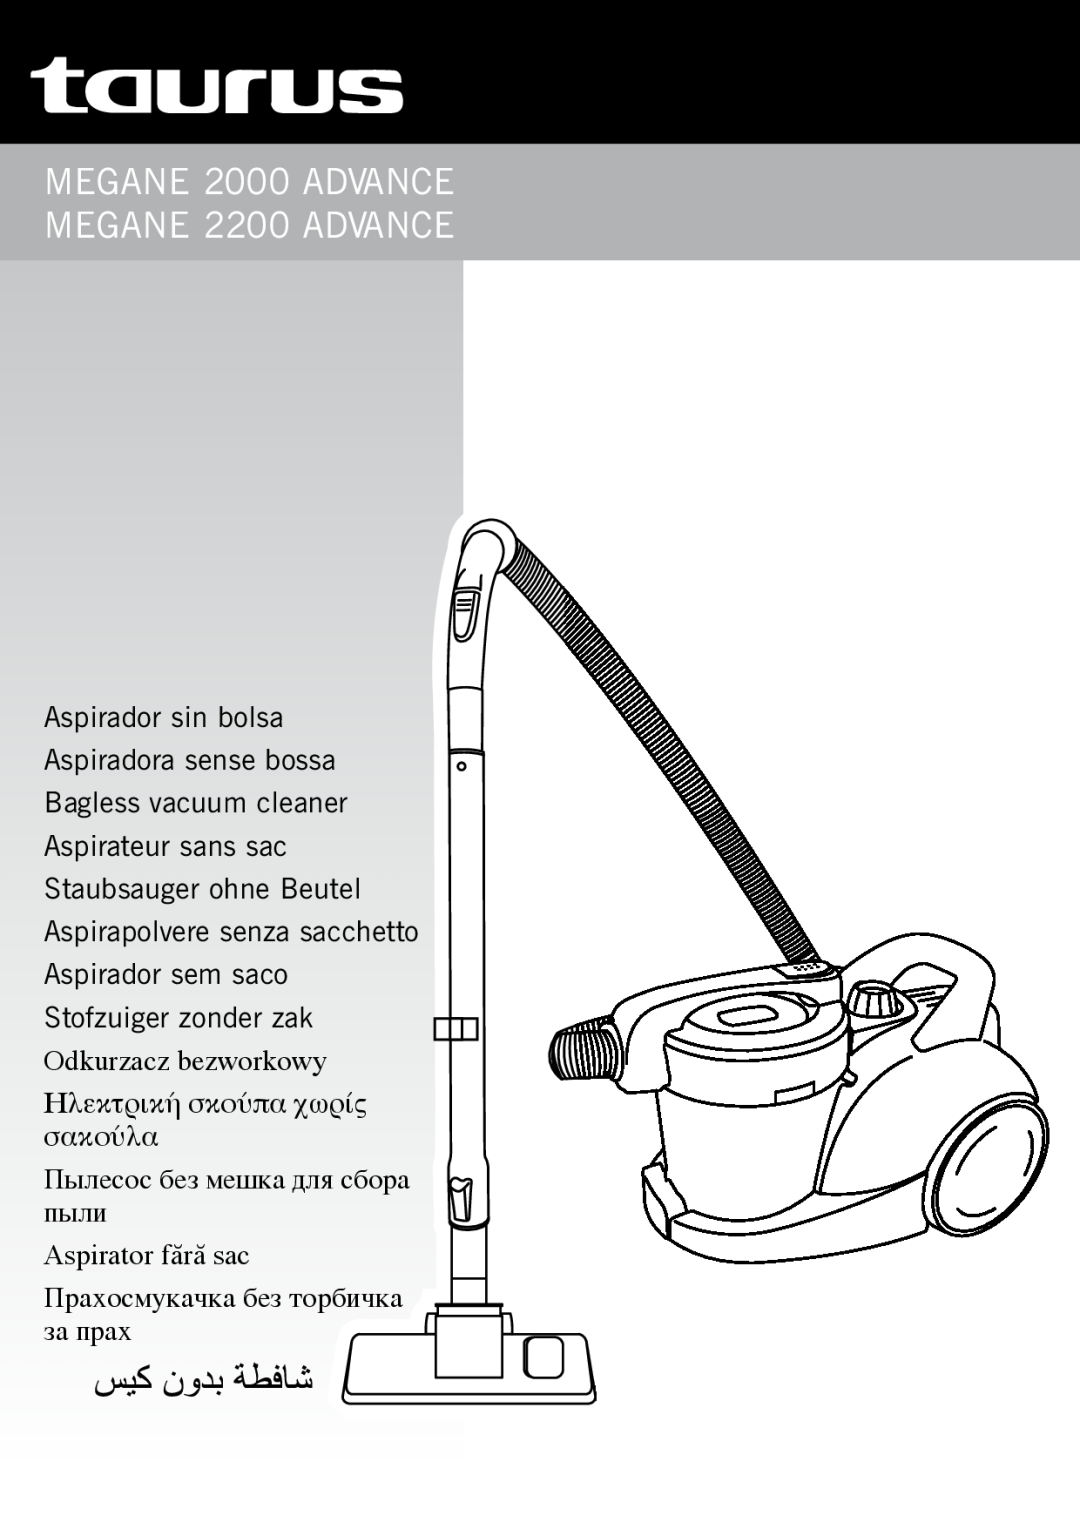 Taurus Group manual Auris 2000 / Auris 2200 / Auris ionic, Aspirador Aspiradora Vacuum cleaner Aspirateur, Manual 